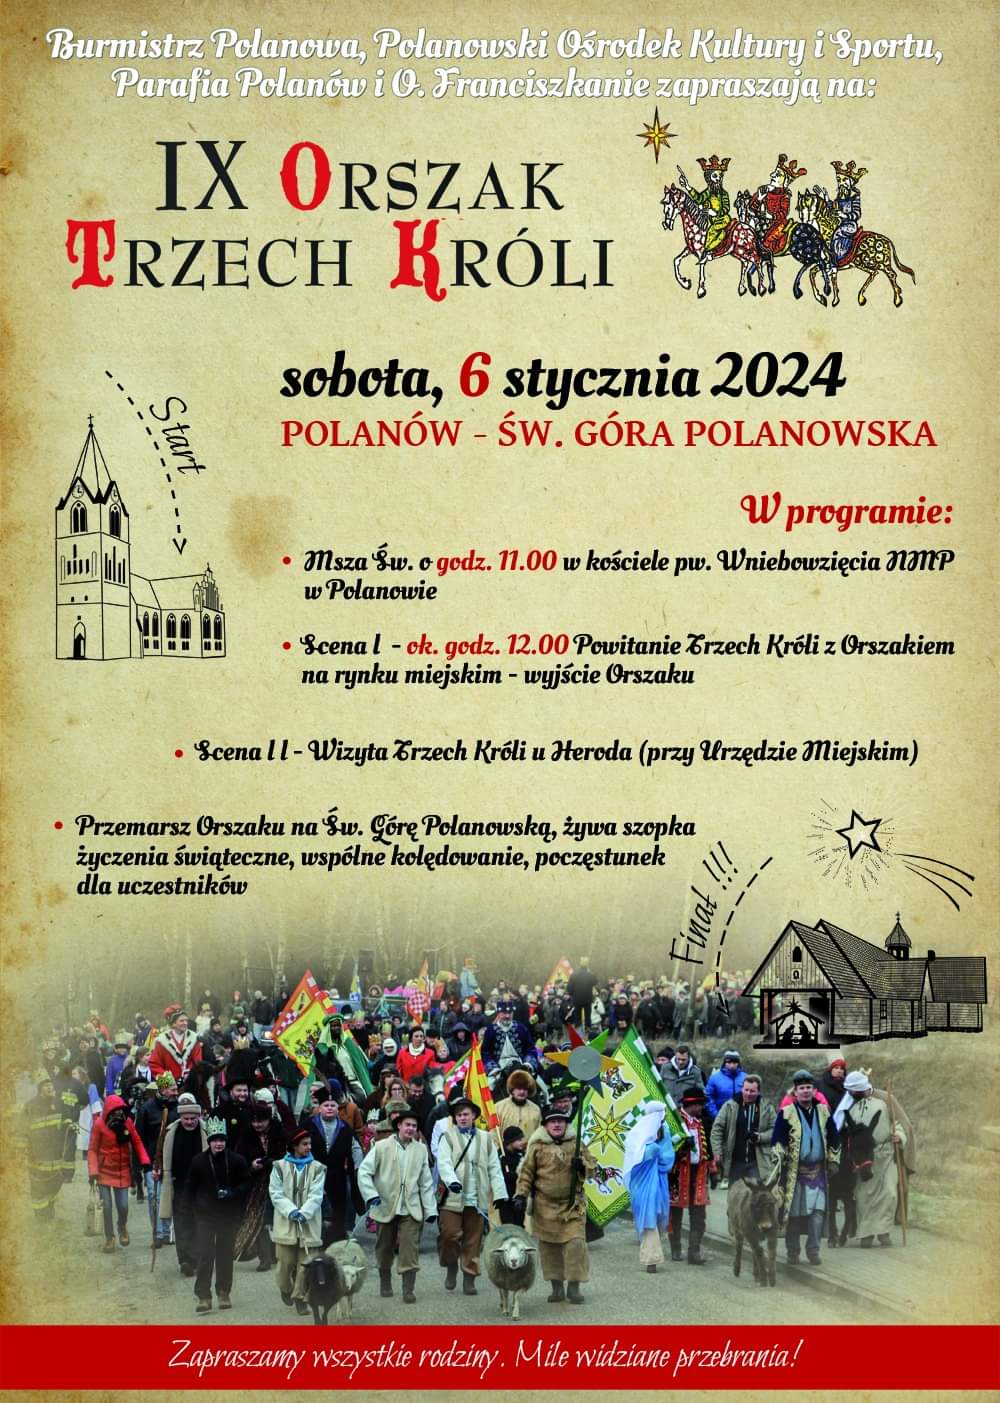 Plakat z zaproszeniem na 9 orszak Trzech Króli 6 stycznia 2024 w Polanowie